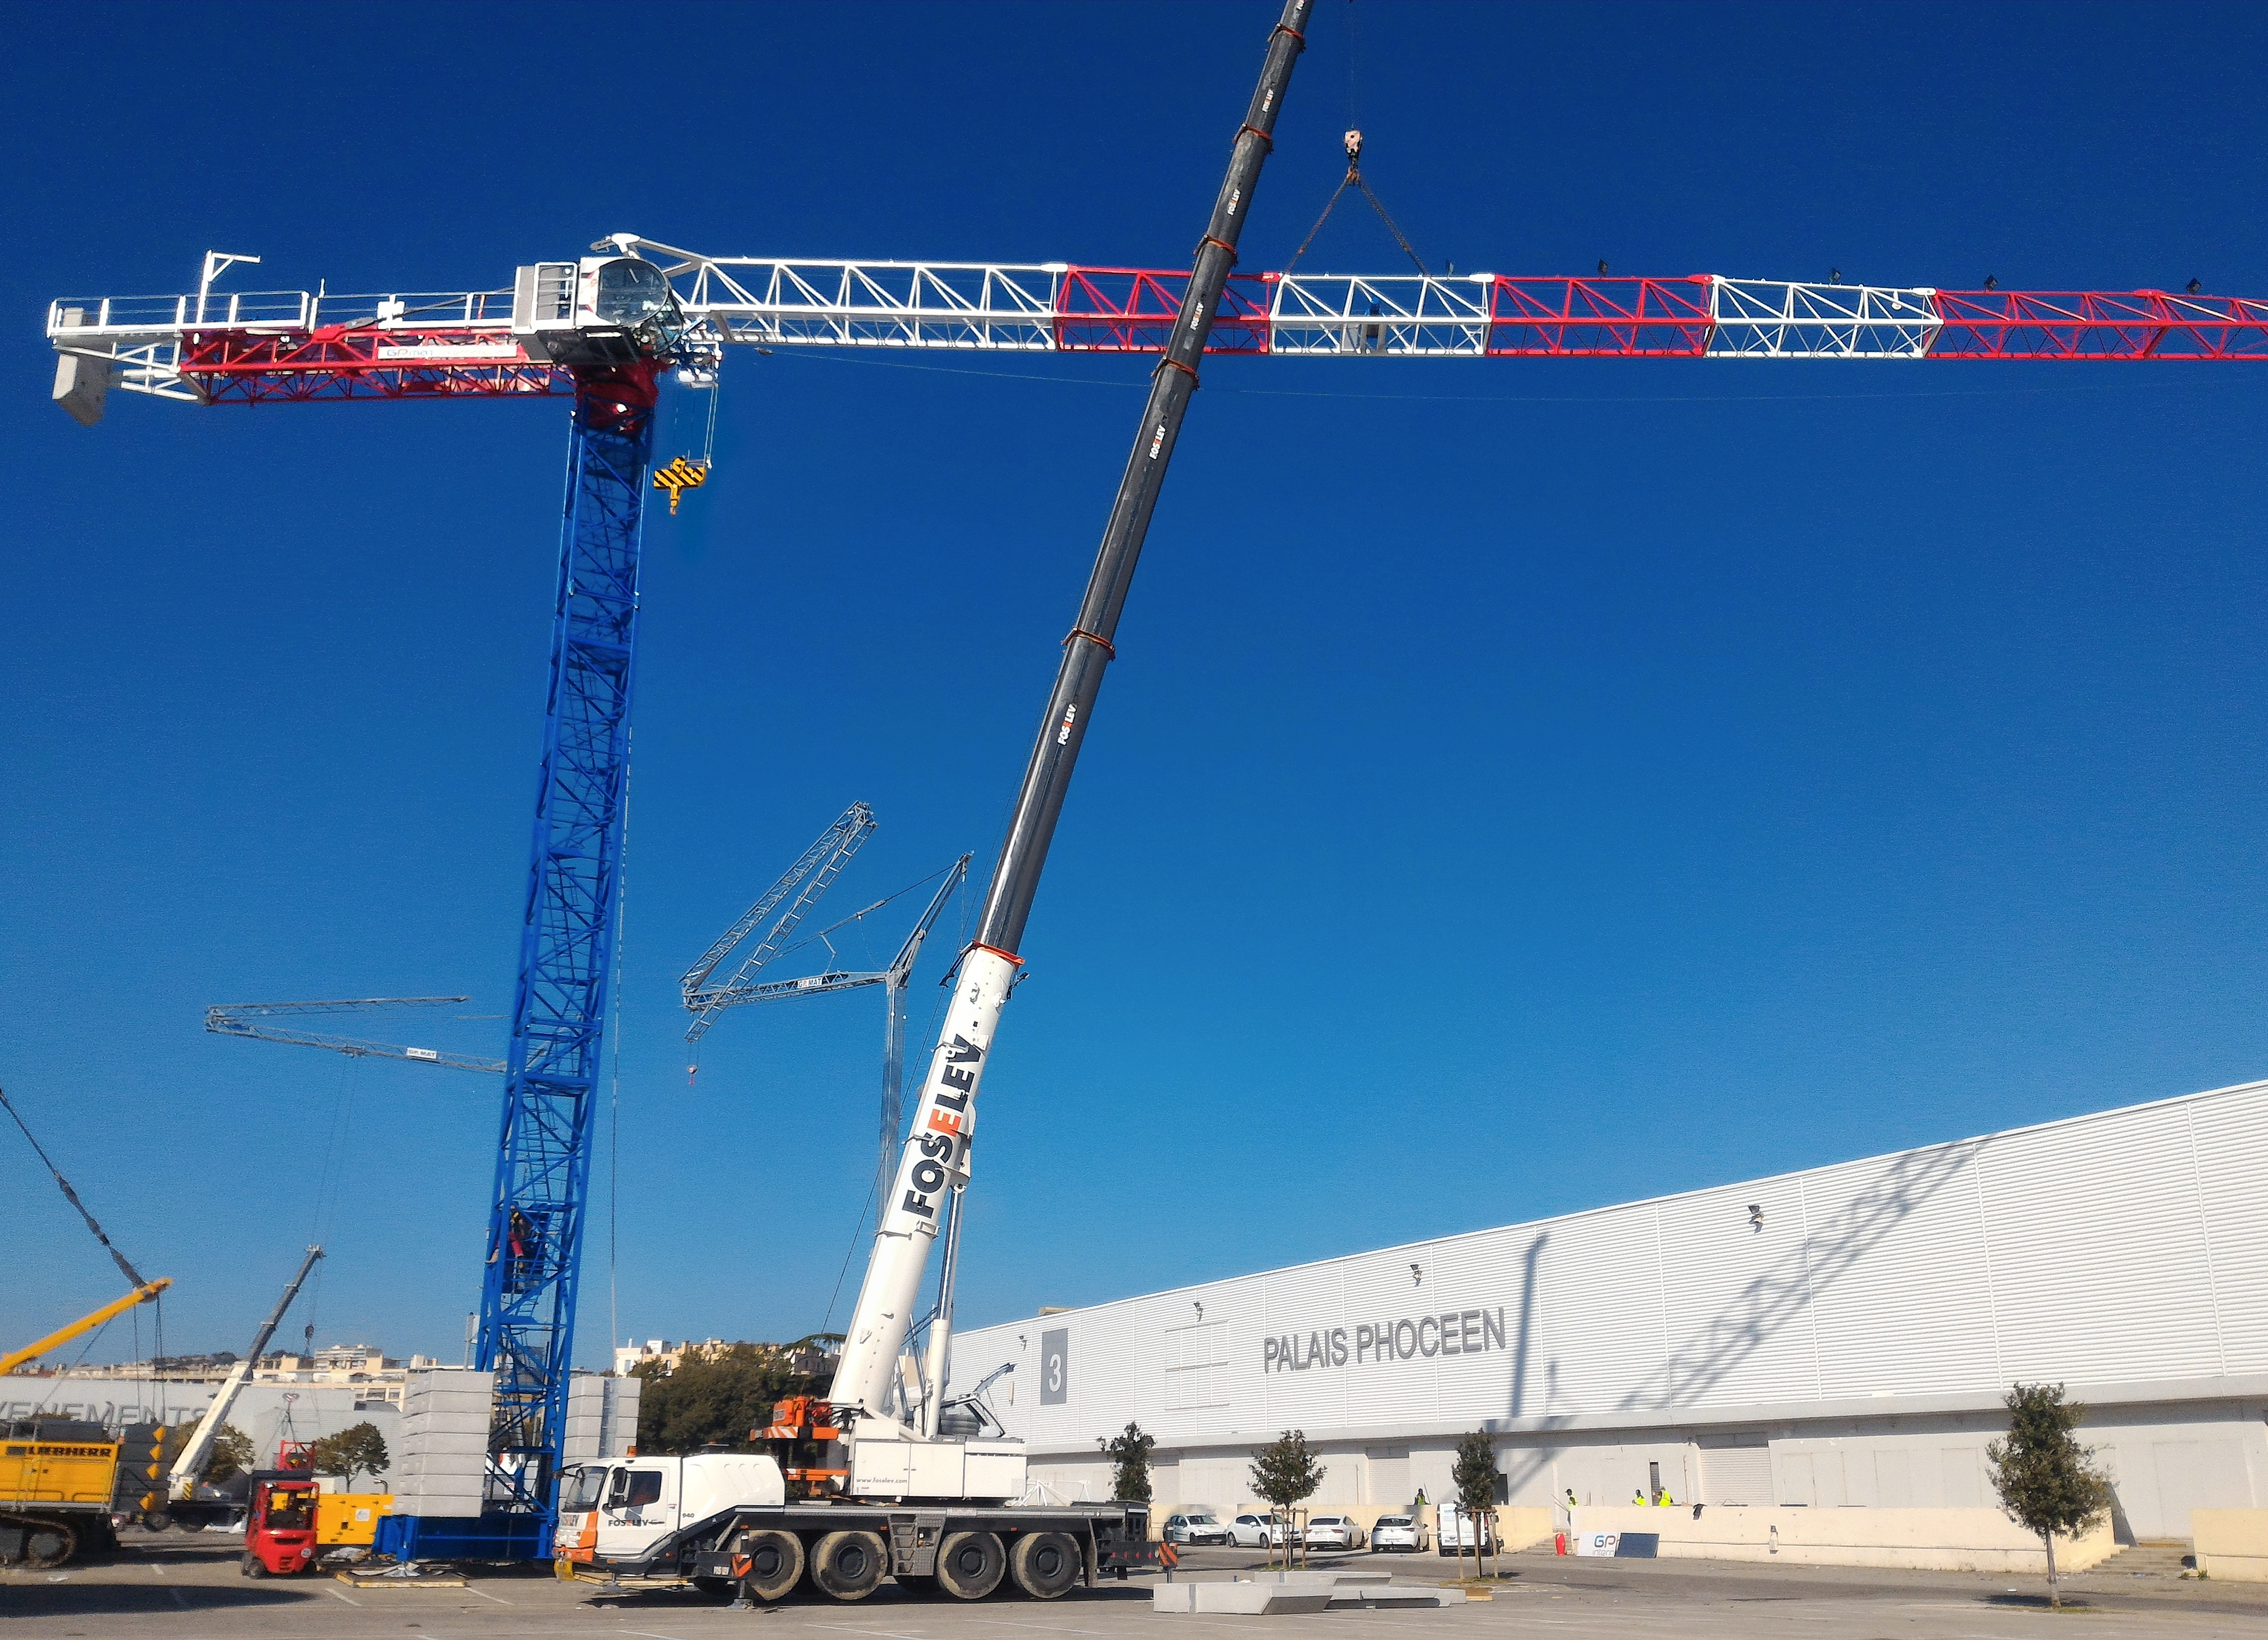 Raimondi MRT223 being erected onsite at JDL MED 2016 in Marseille, France.